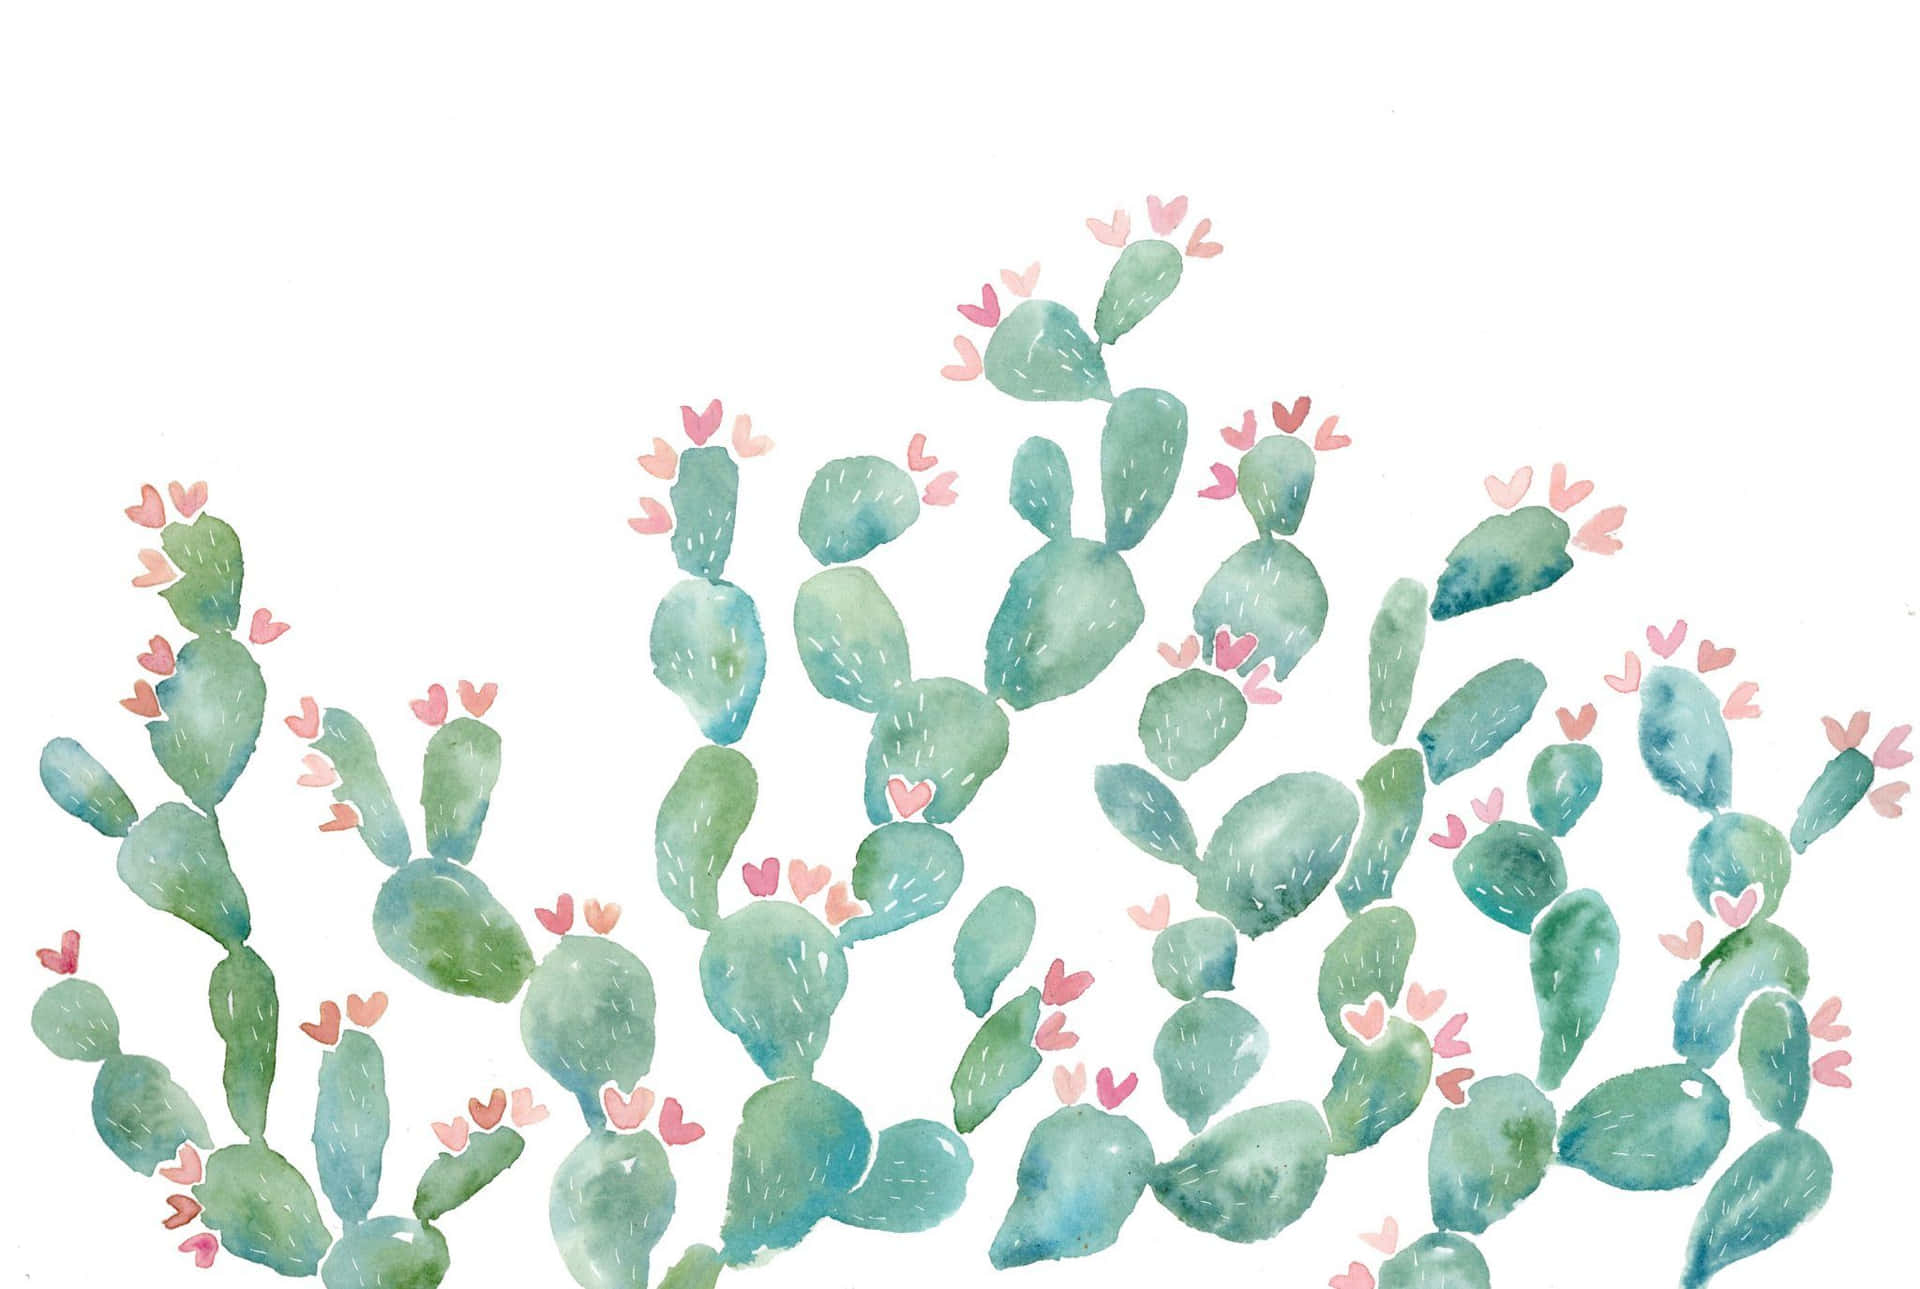 Bunnyohr-kaktus Gemälde Bild